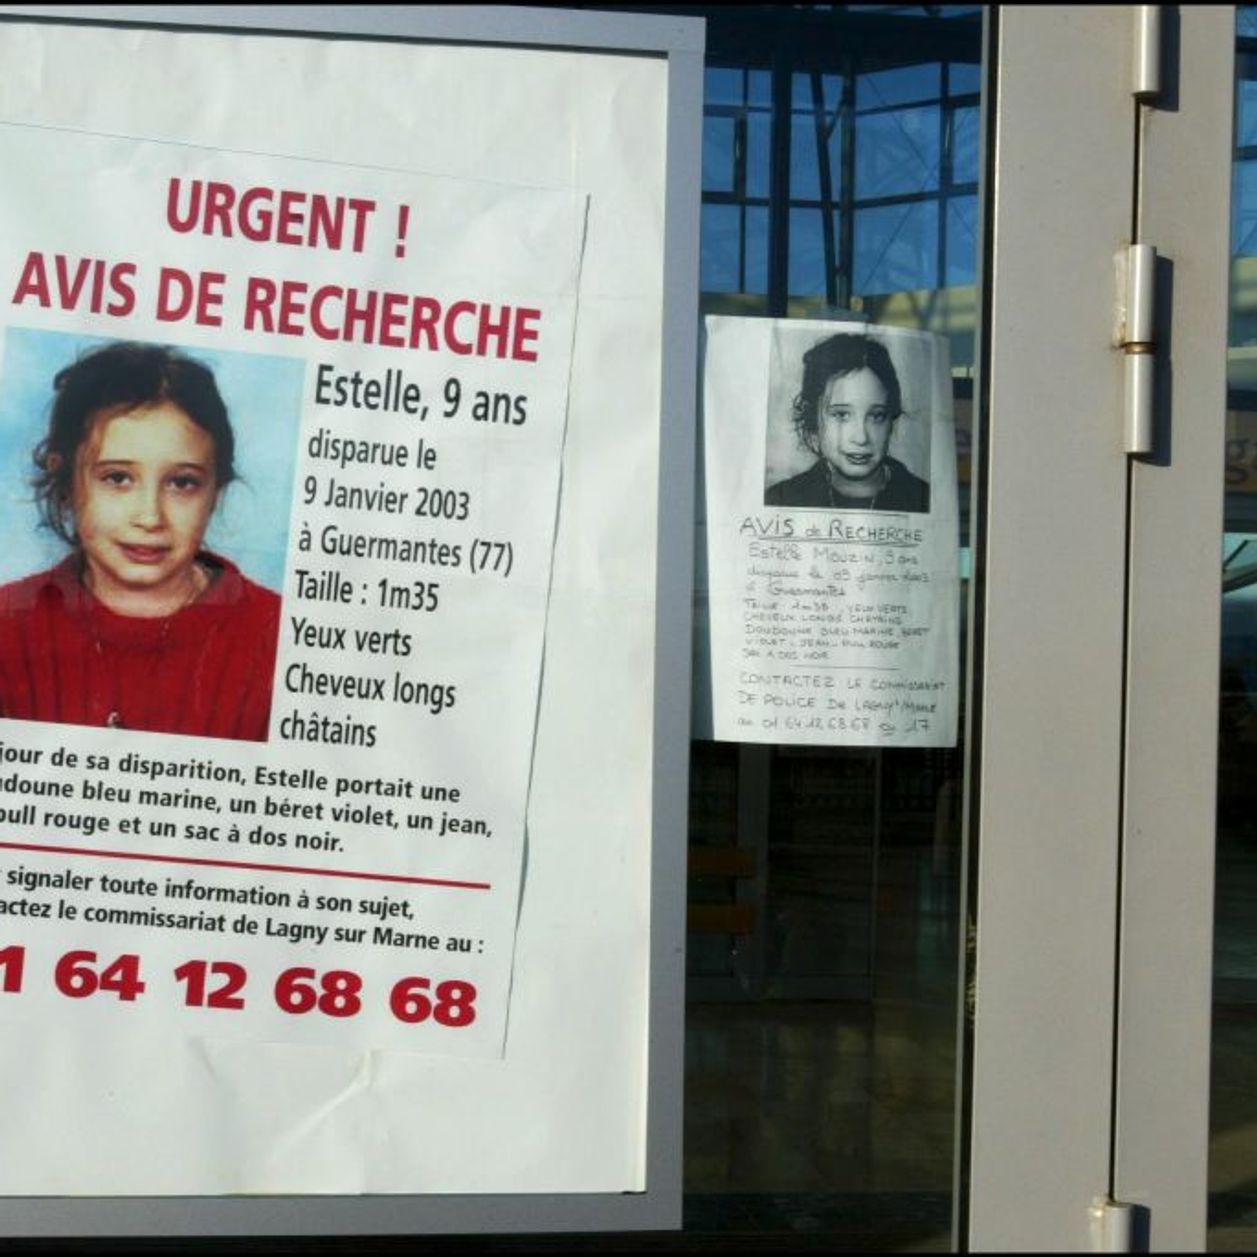 "On espérait rendre cette petite fille à son papa" : la disparition d'Estelle Mouzin, un drame irrésolu